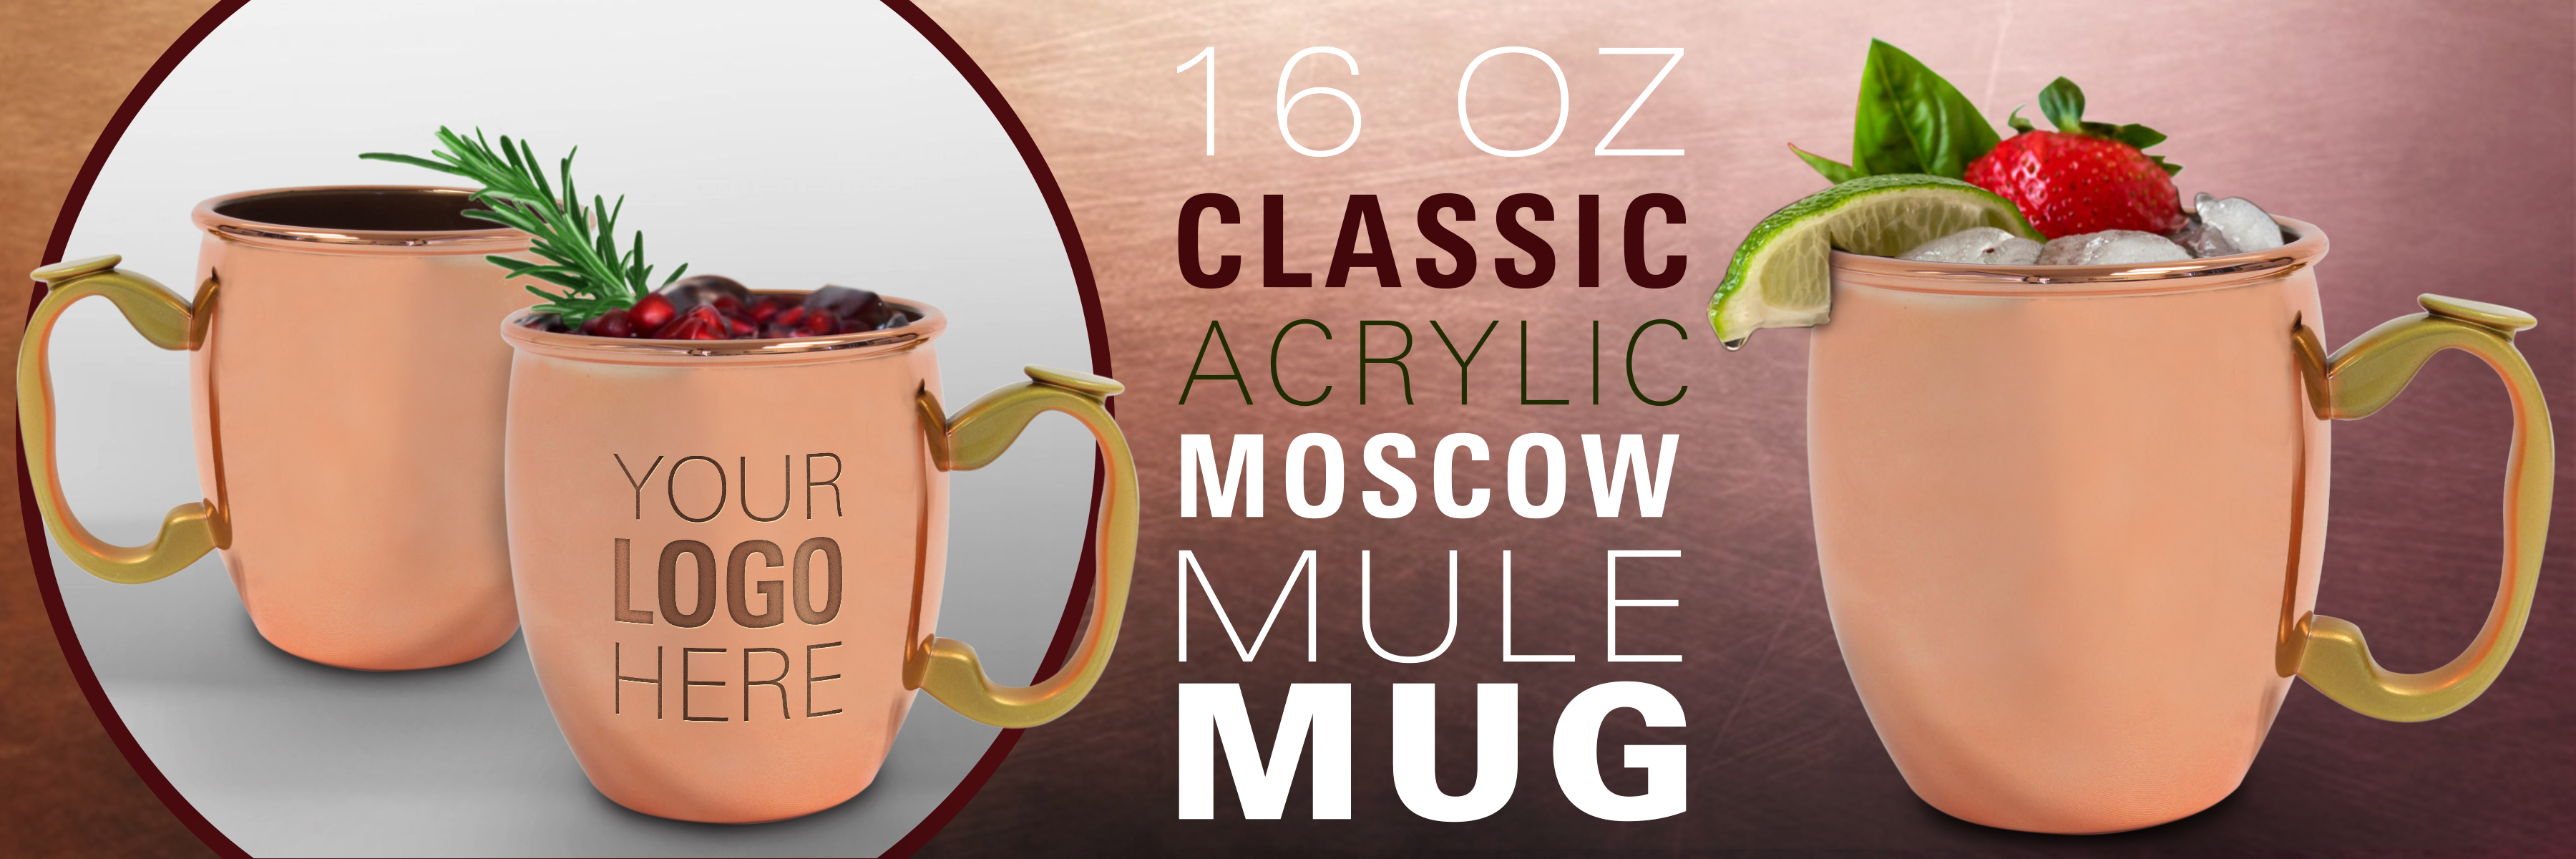 acrylic moscow mule mug